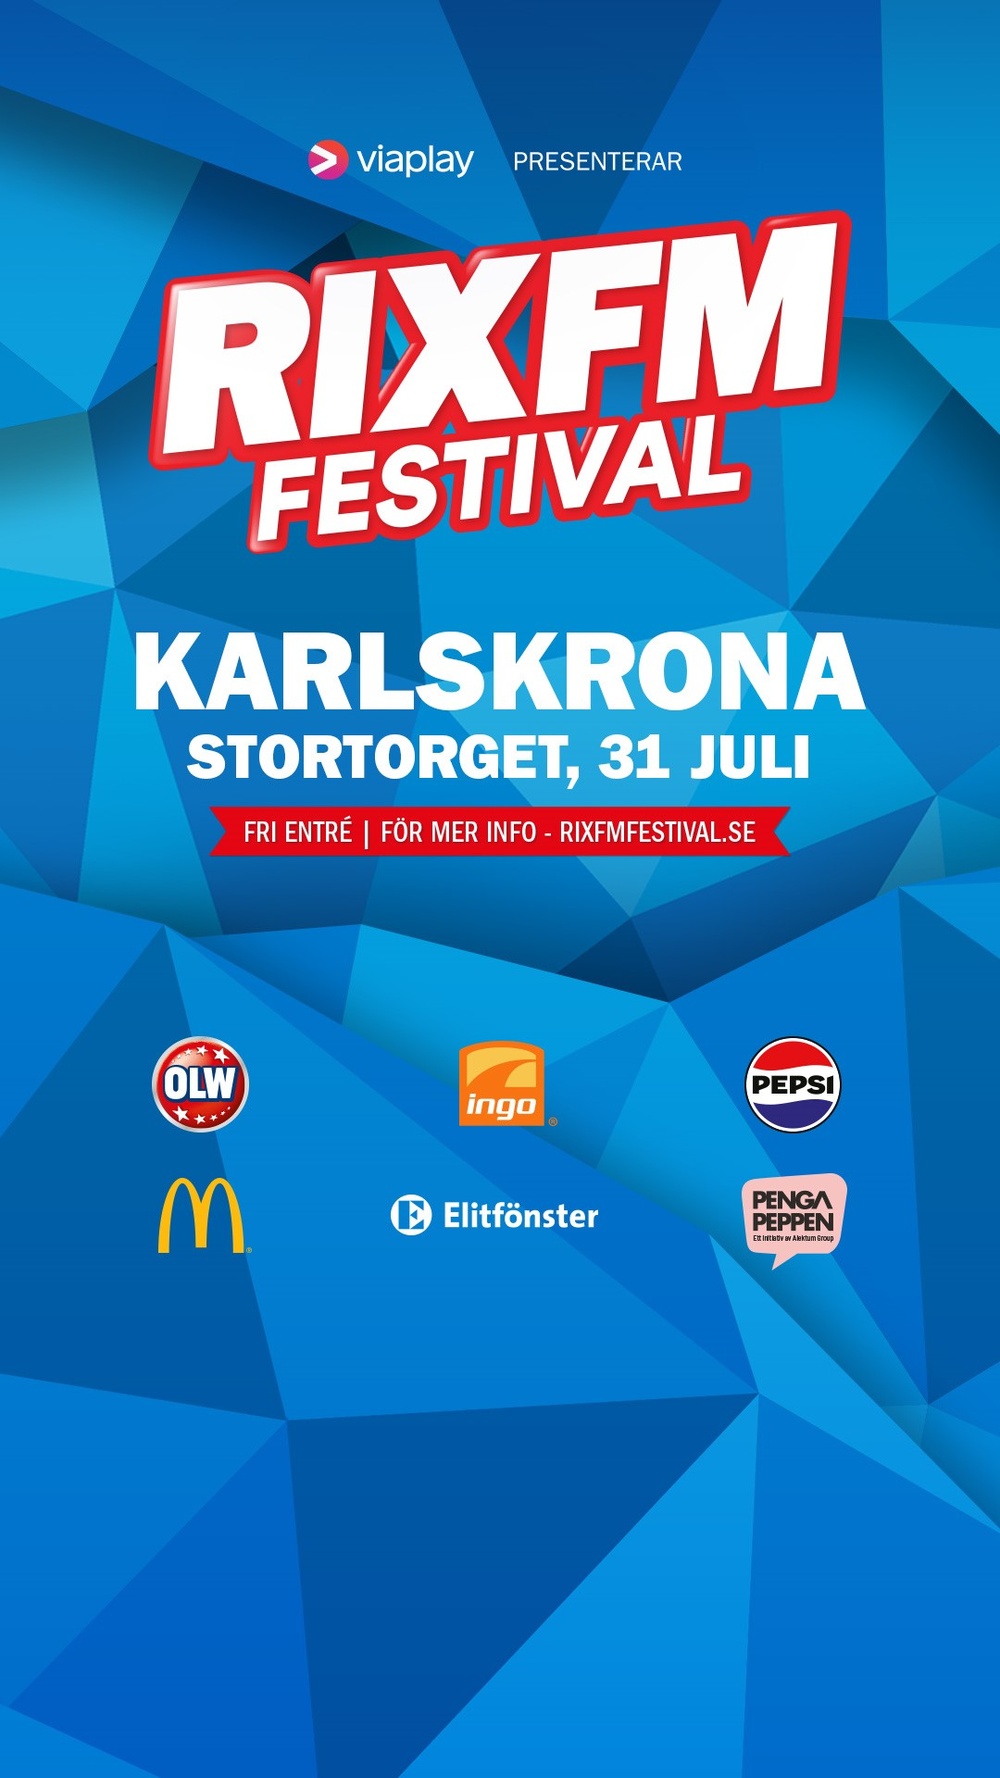 Affisch för Karlskrona med RIX FM Festivals logo samt sponsorer.